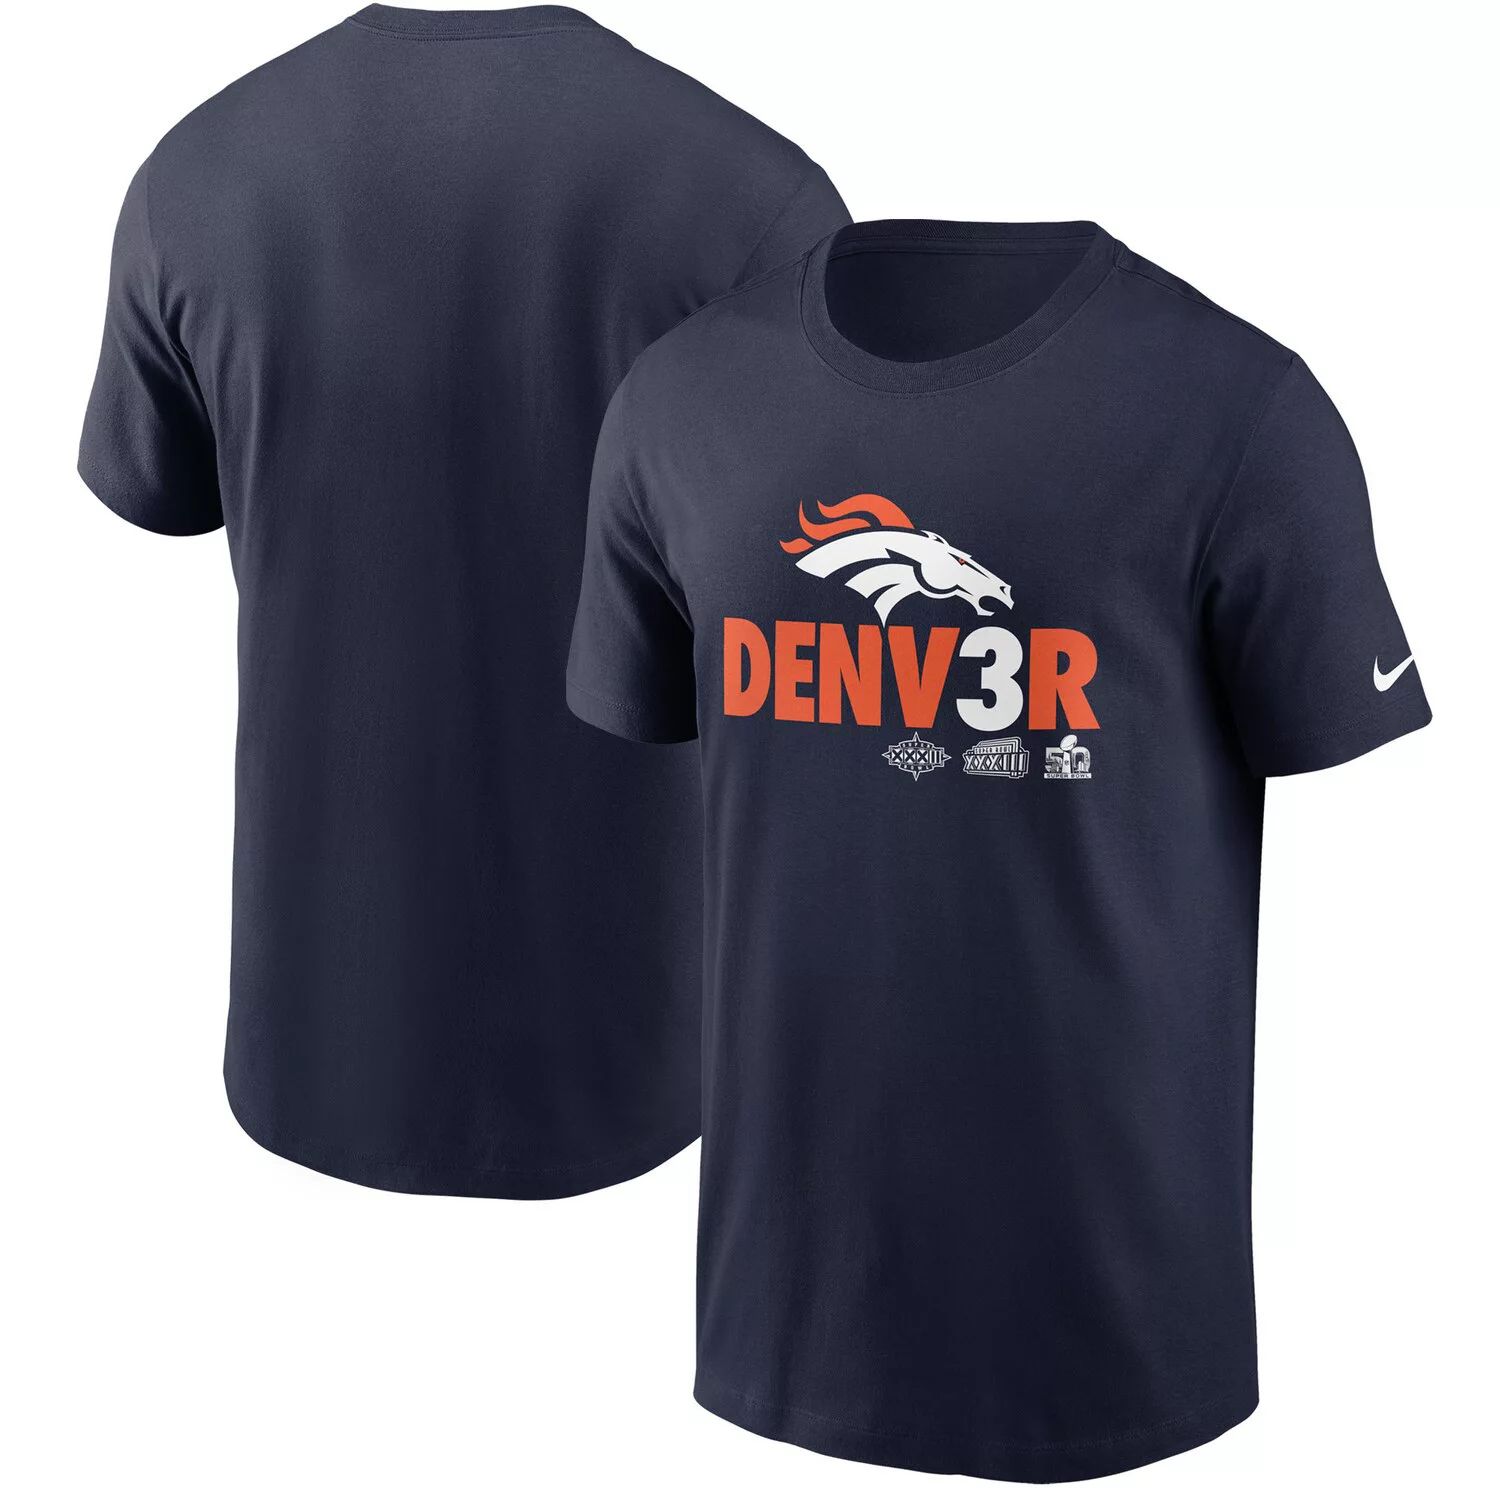 Мужская темно-синяя футболка Denver Broncos Hometown Collection Denv3r Nike